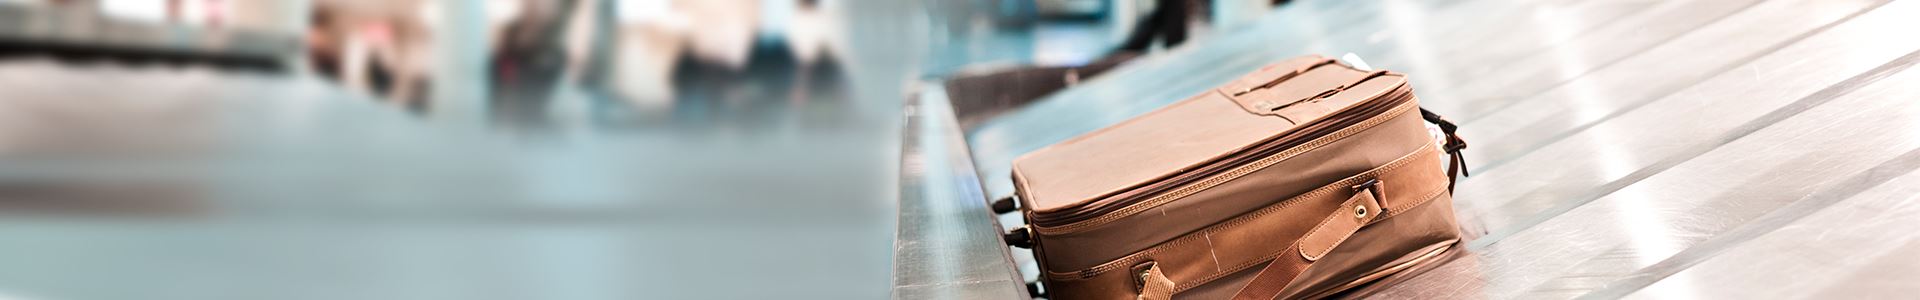 A imagem mostra uma mala castanha, deitada num tapete rolante de bagagens de um aeroporto. Junto a ela não existem outras malas.